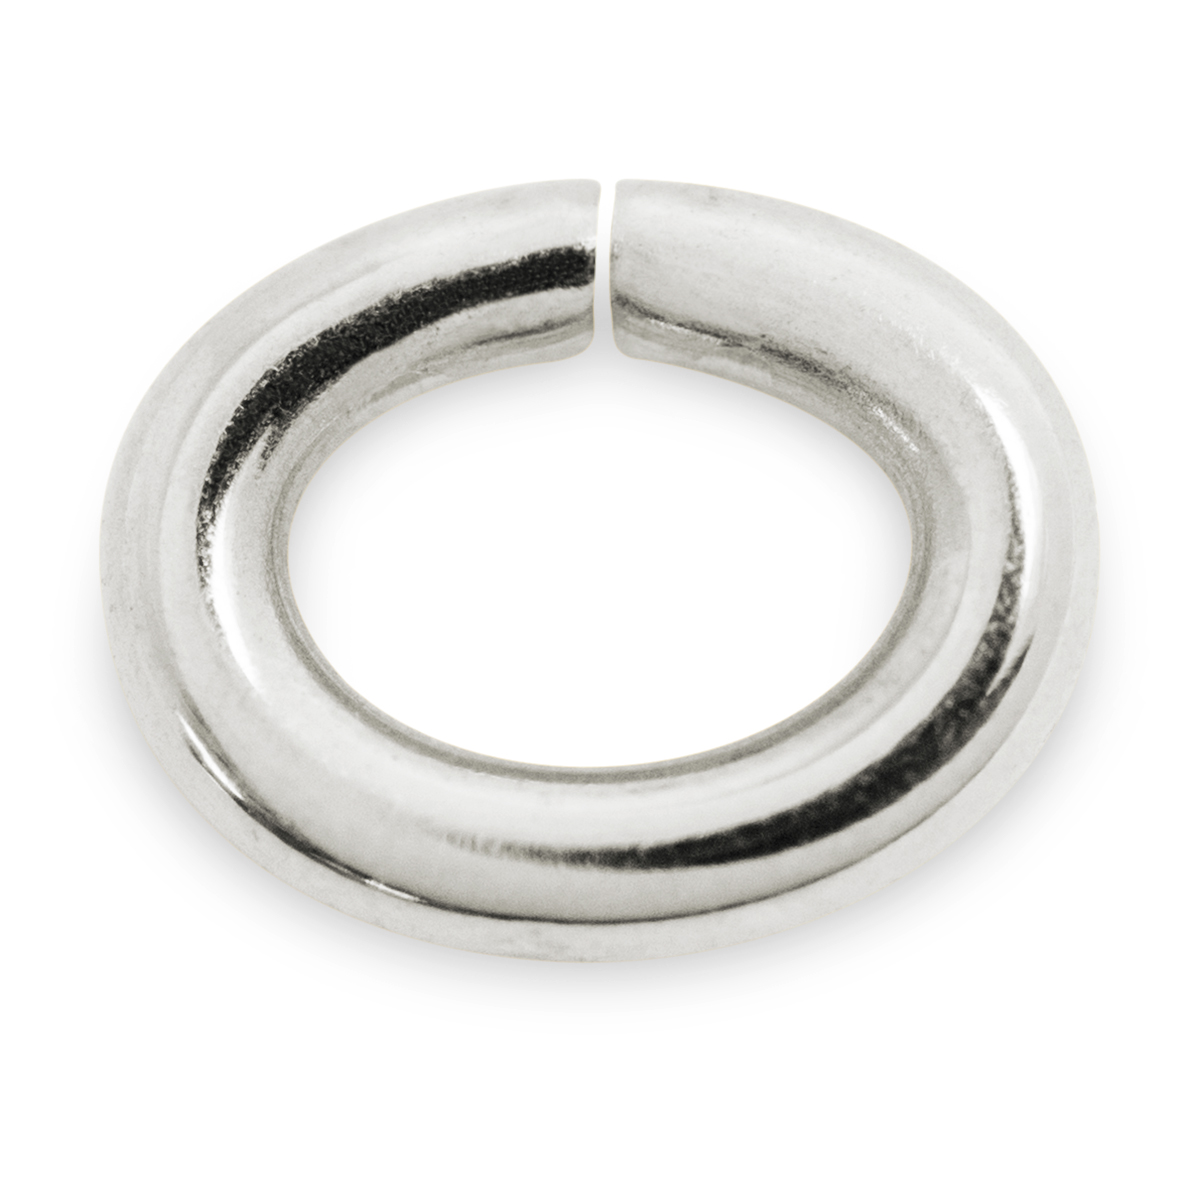 Binderinge, oval, 925/- Silber, Ø 3 mm, Stärke 0,7 mm